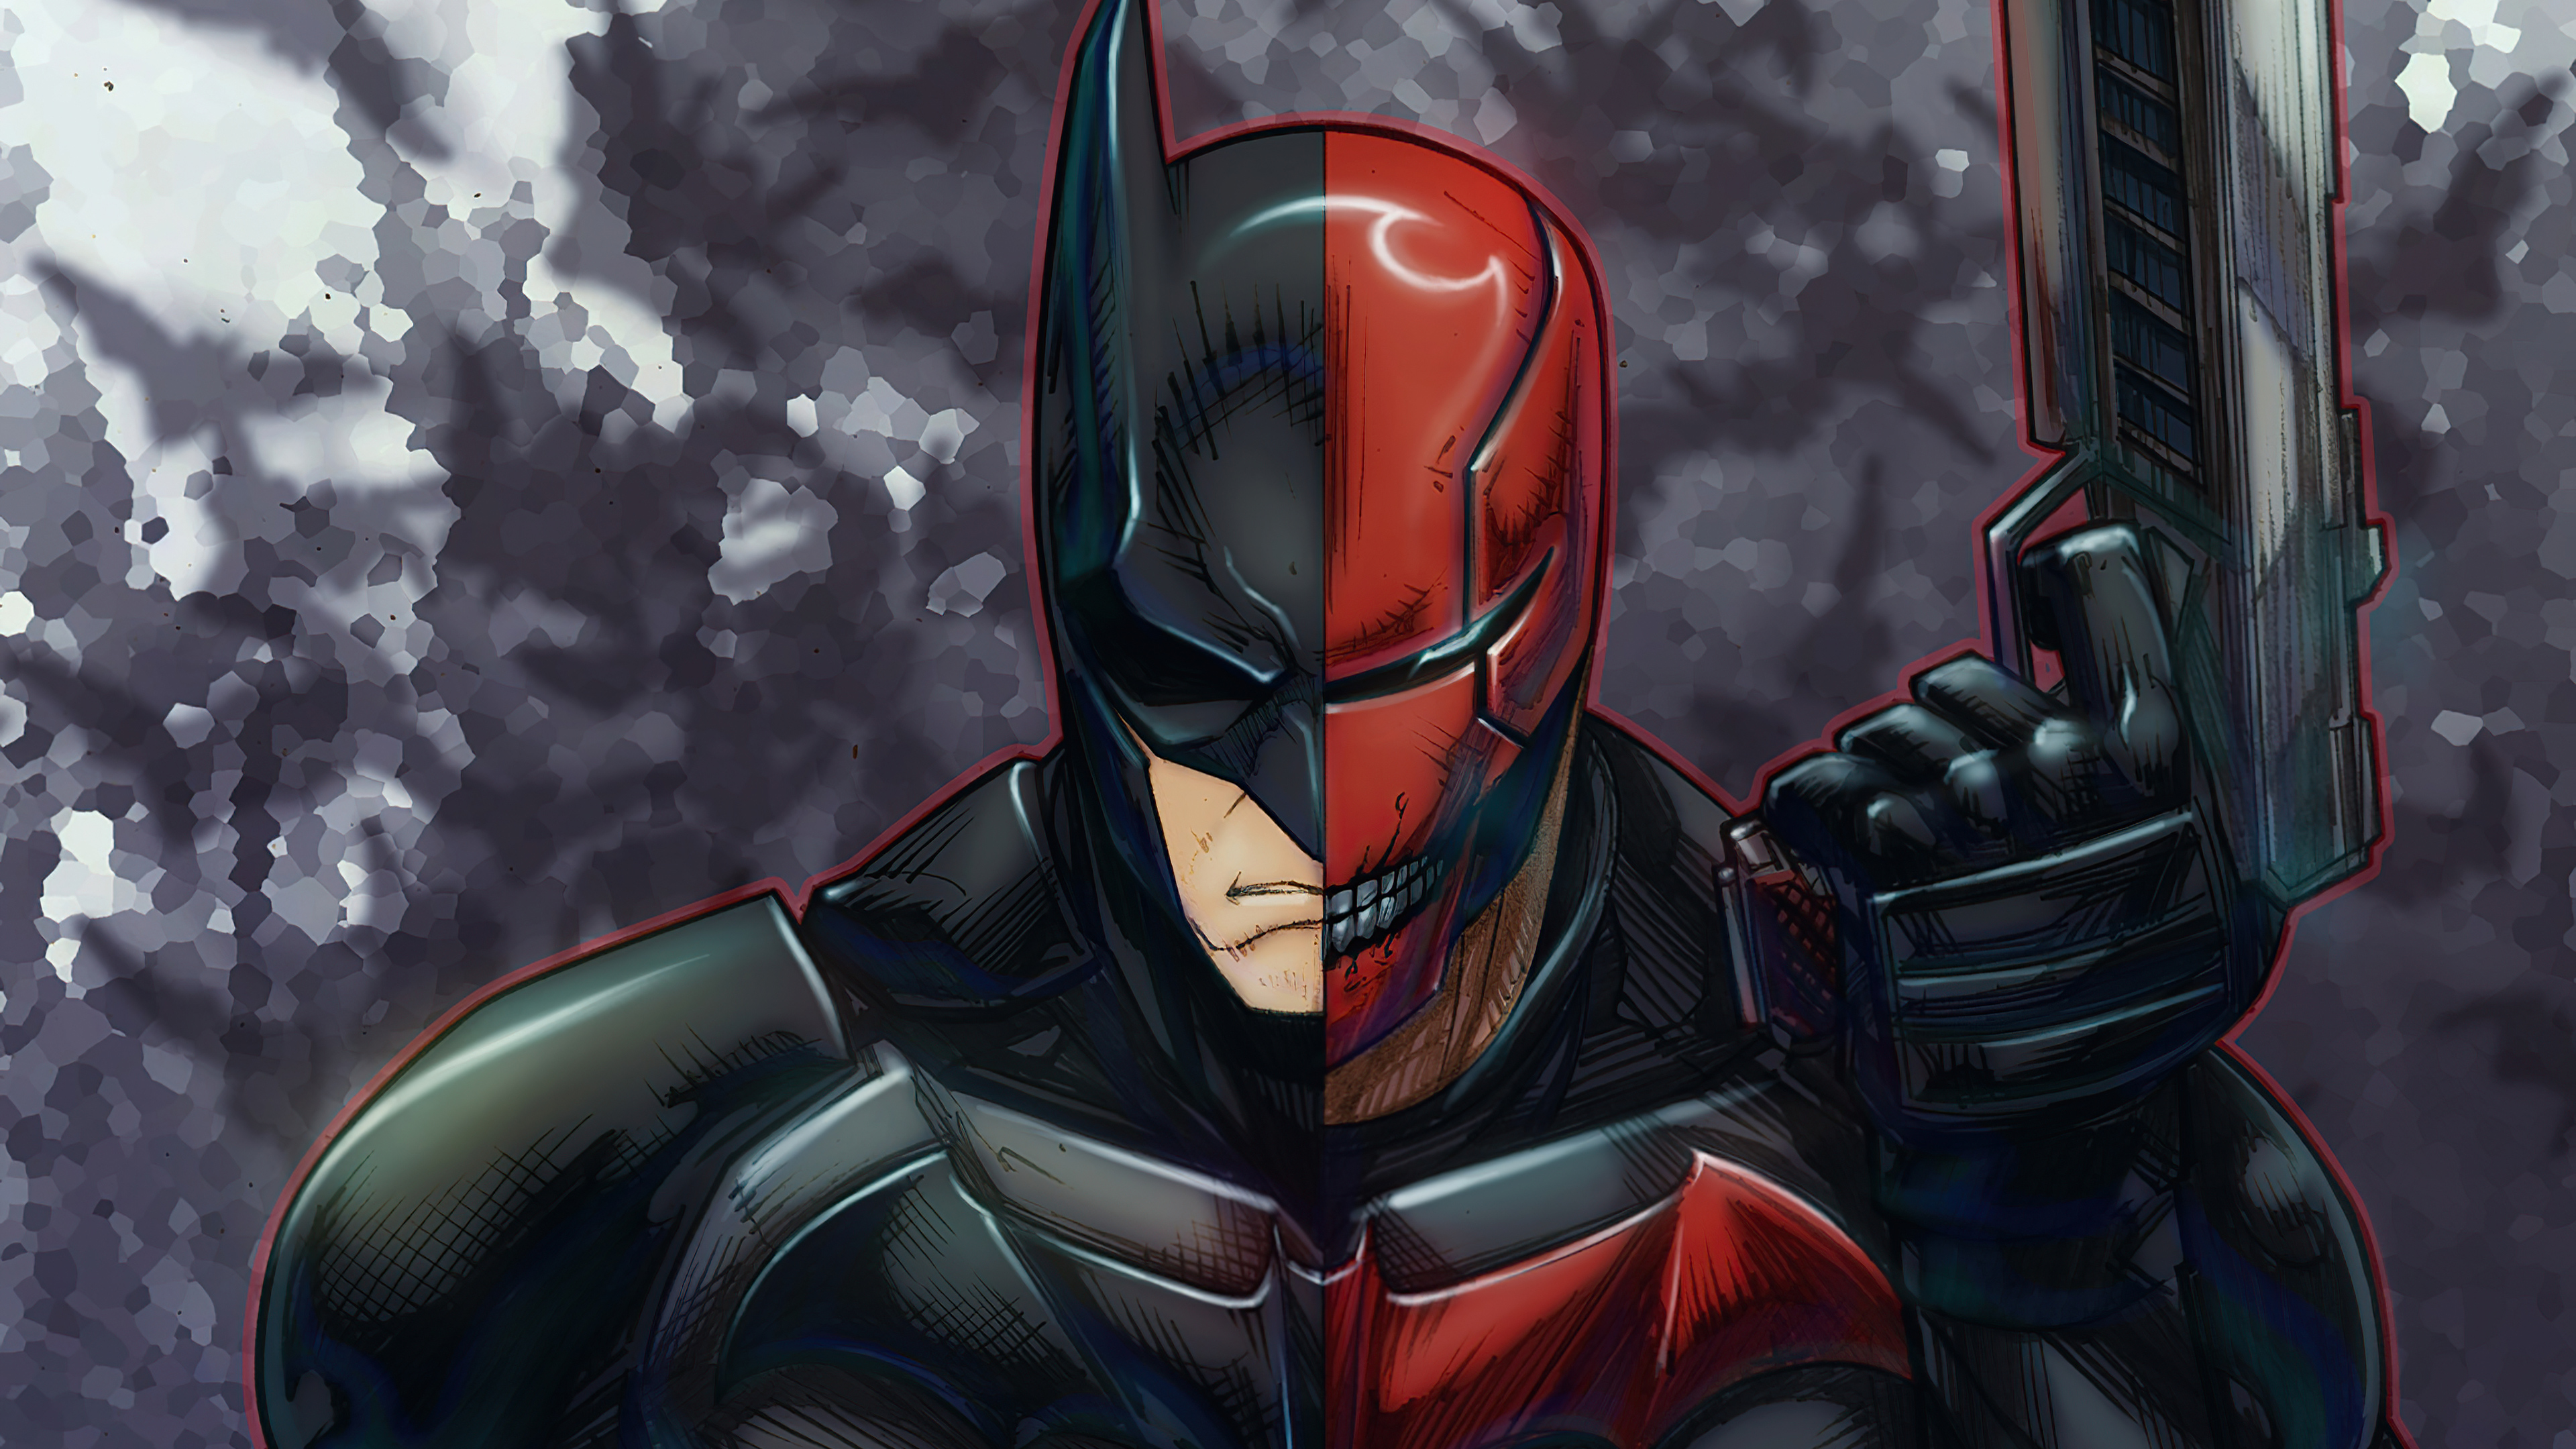 Batman red hood superheroes hd k artist artwork digital art deviantart